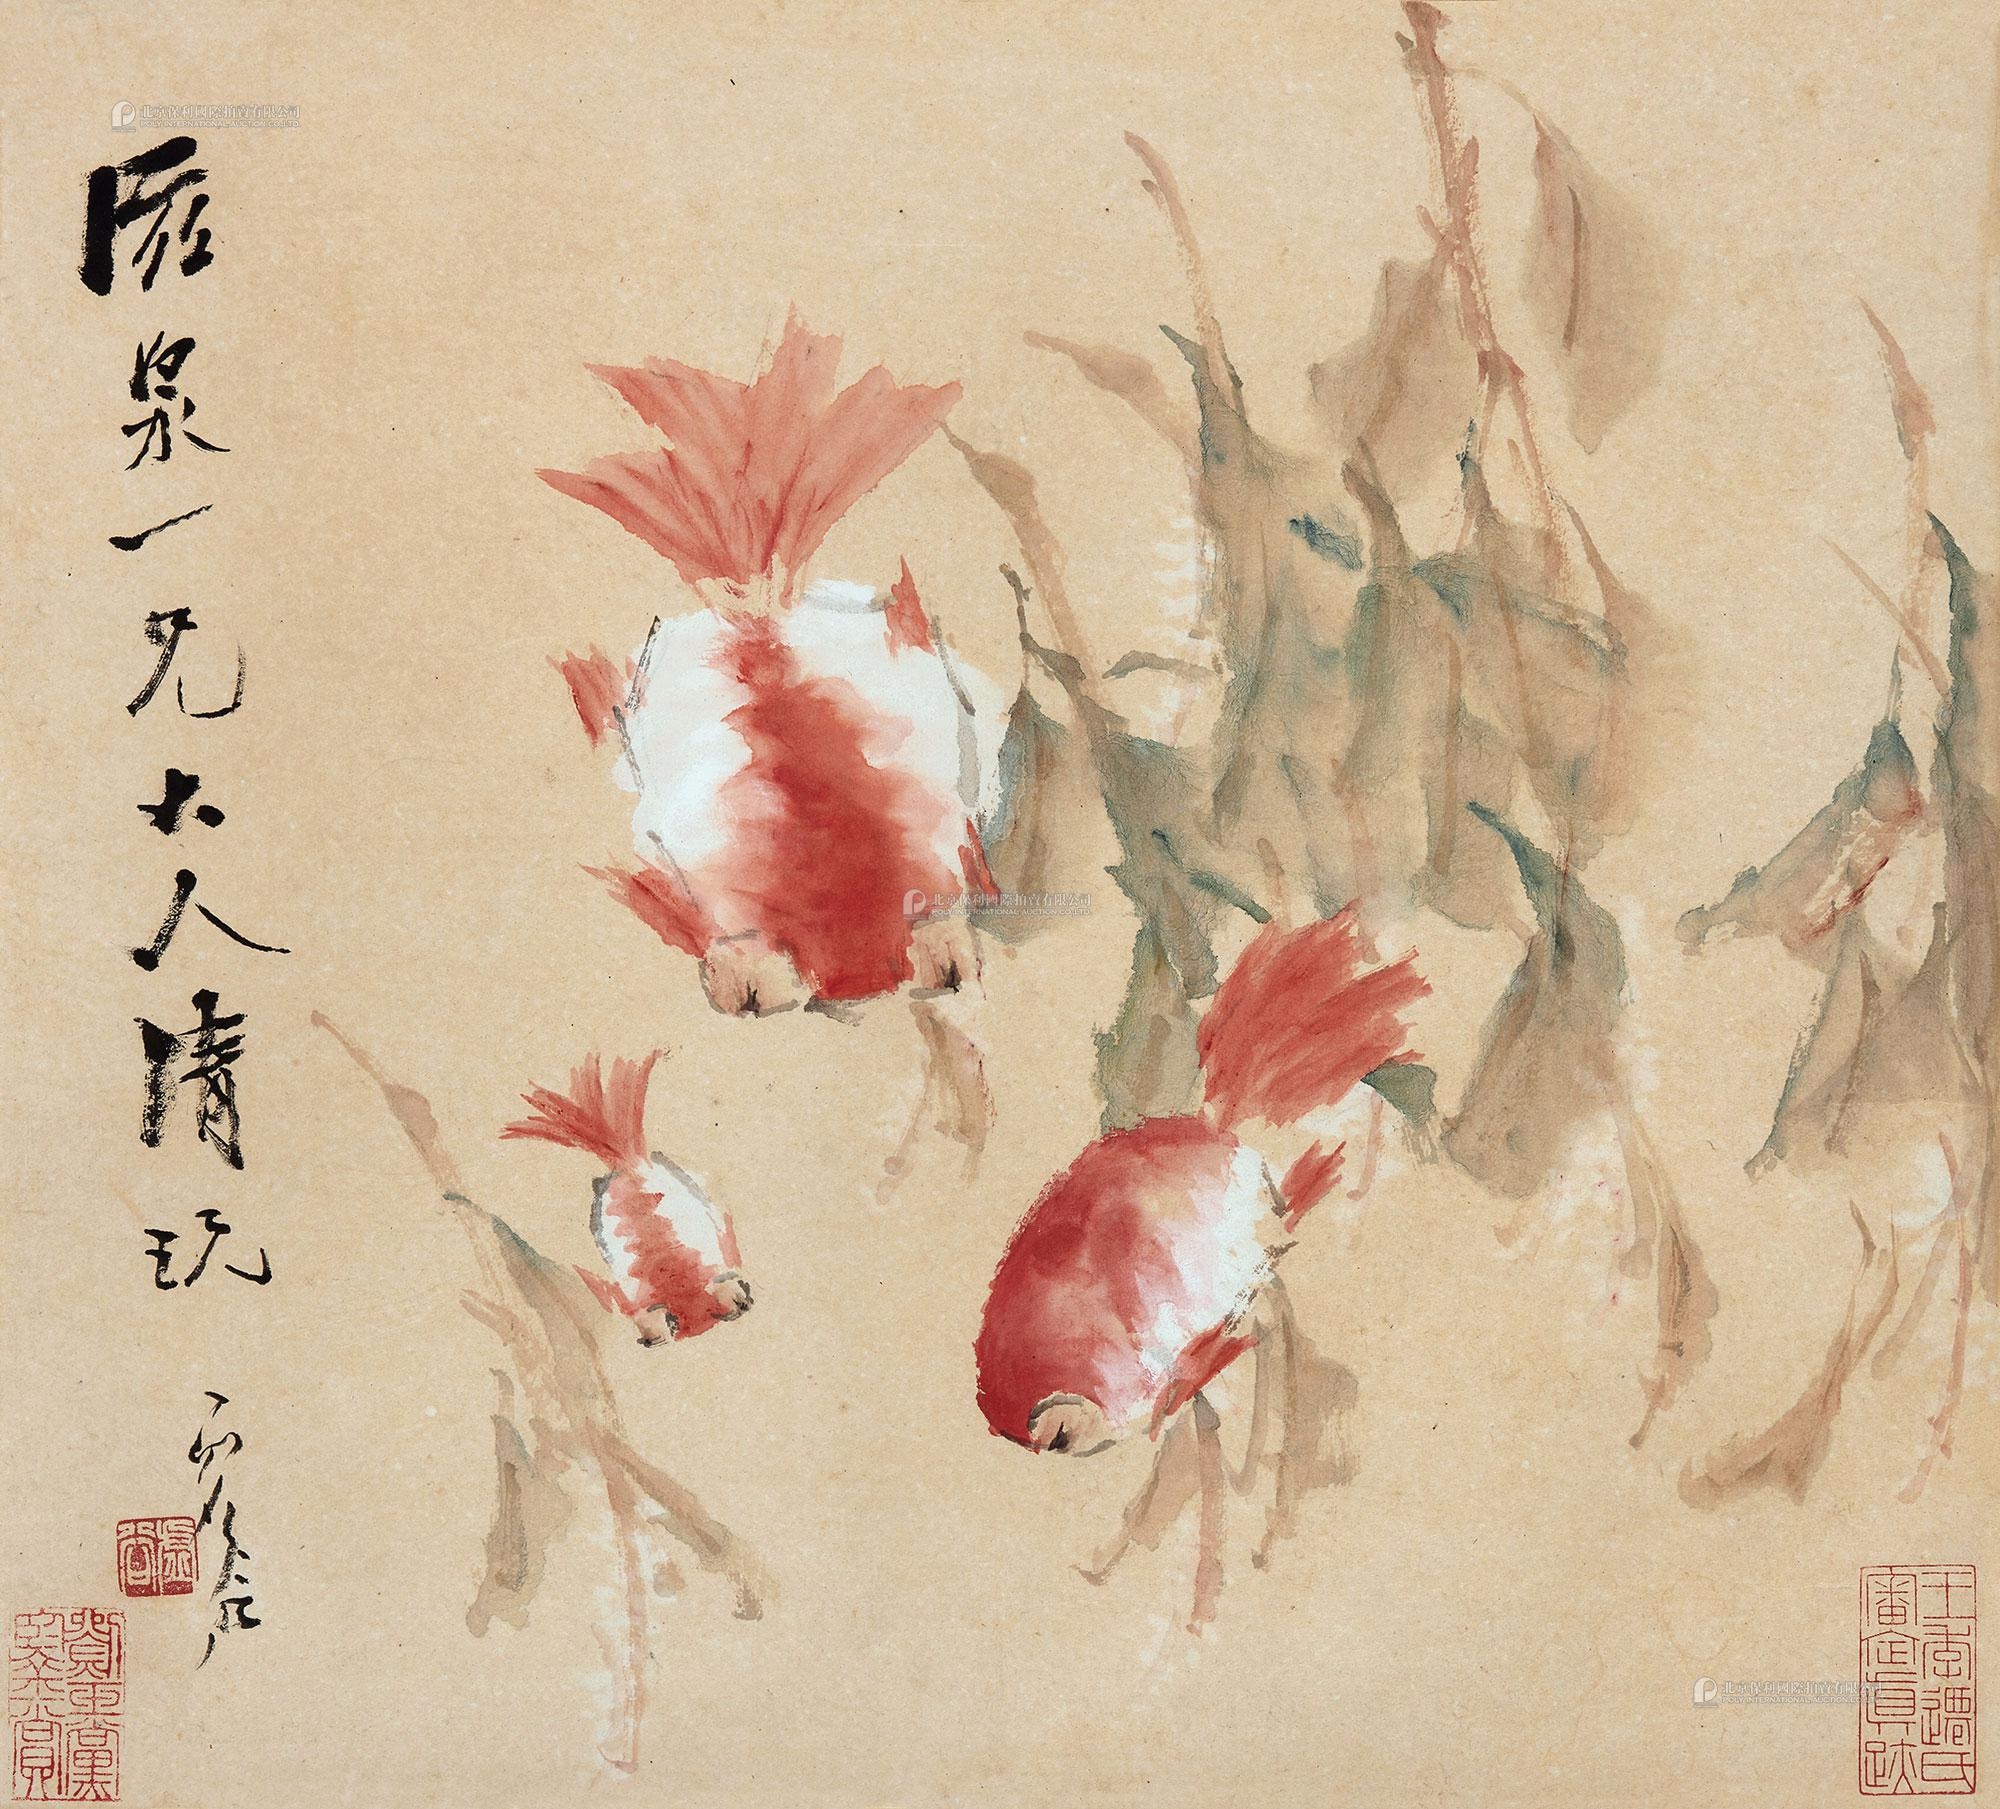 Artwork by Xu Gu, XU GU Fishes, Made of mounted